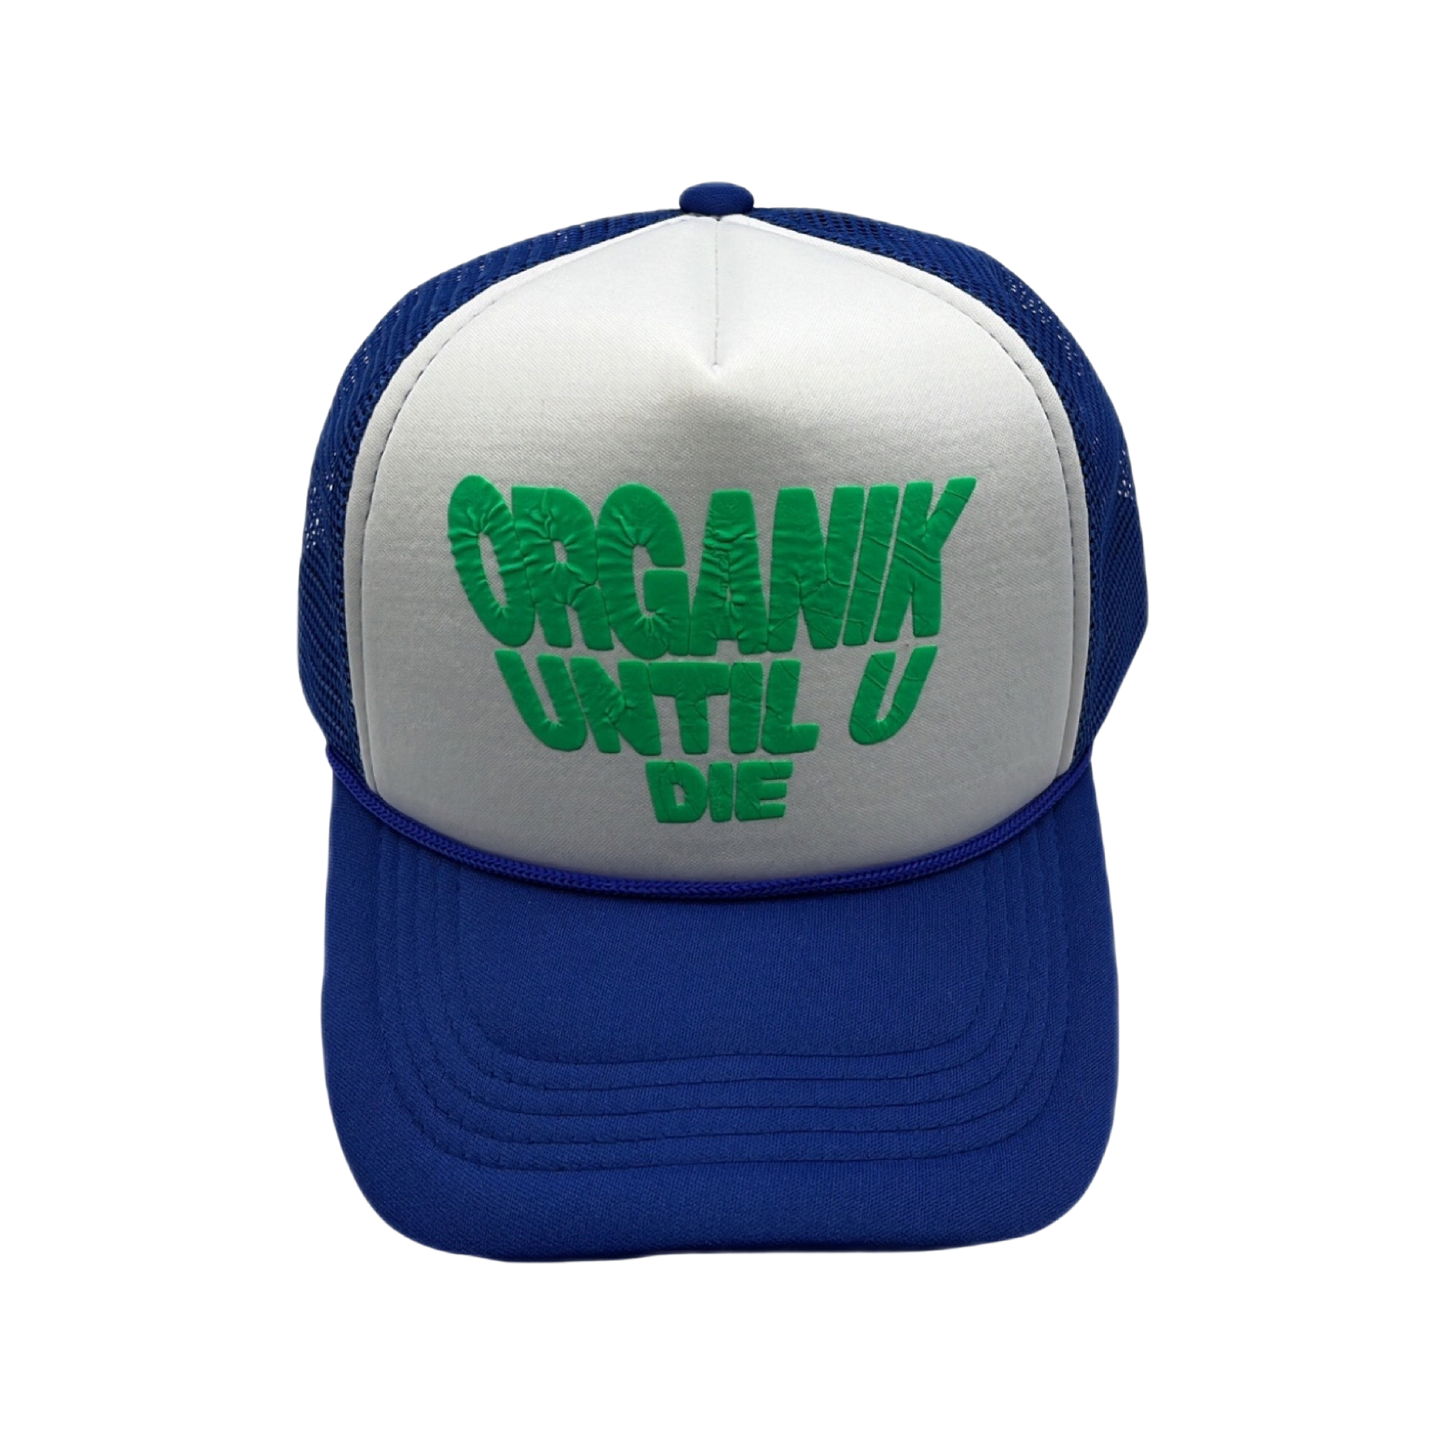 Mr. Organik and Grind Until U Die Trucker Hat Collab Blue